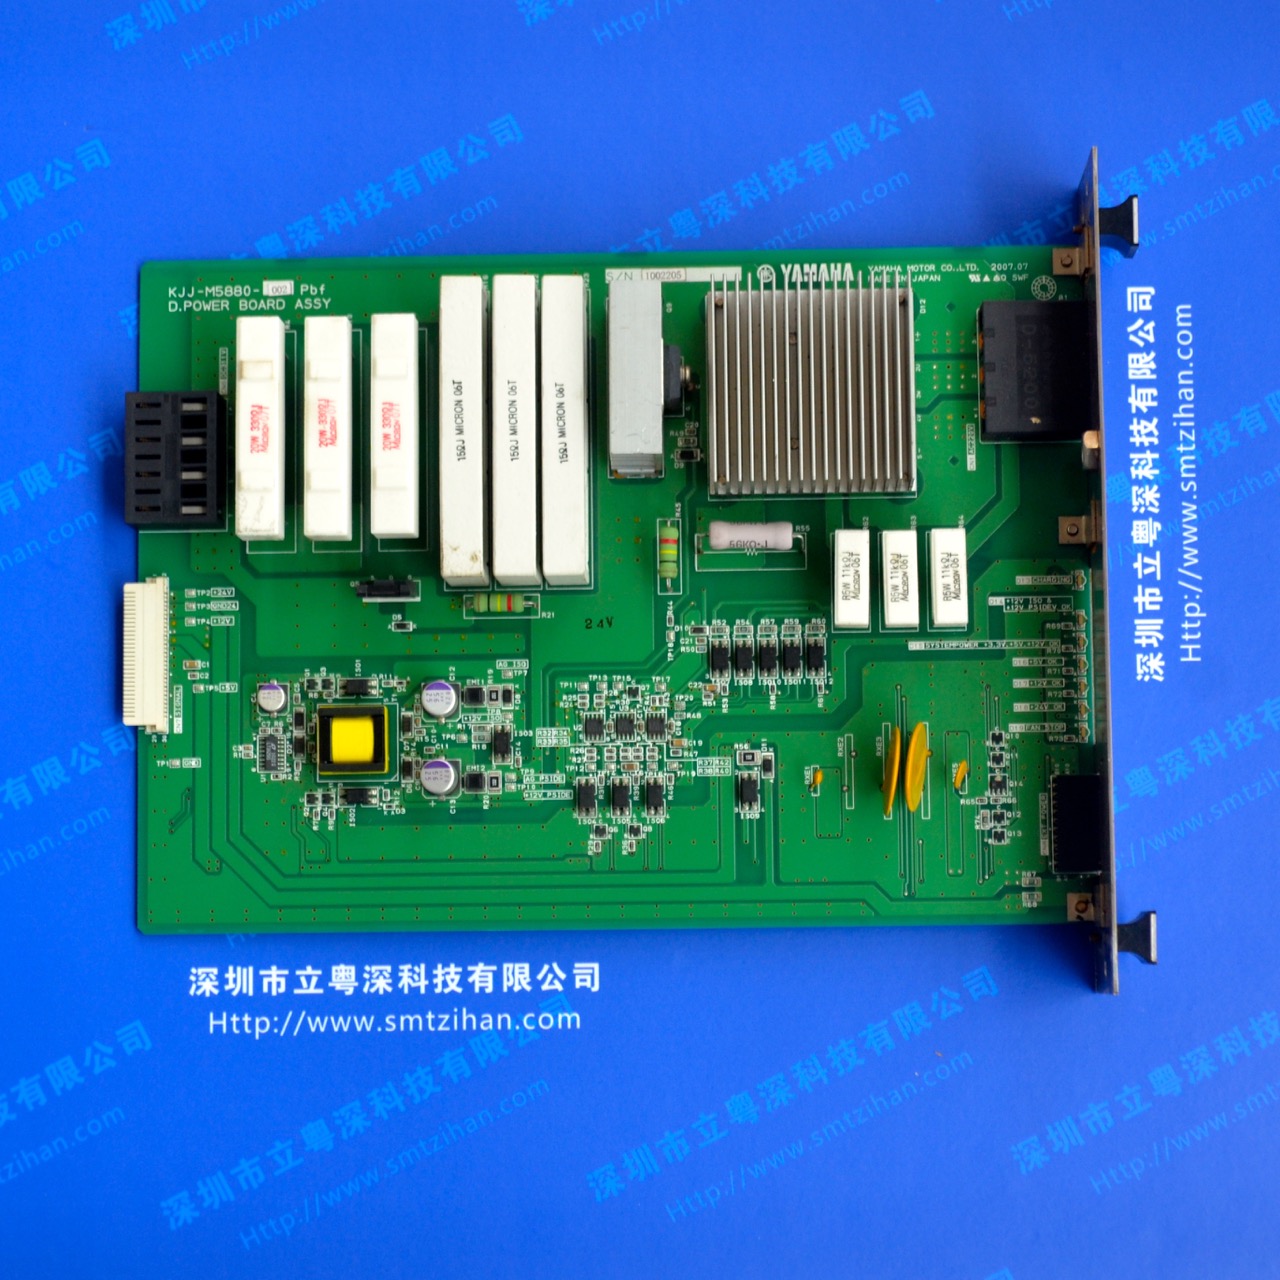 kjj-m5880-002 d.power board assykjj-m5880-002 d.power board assykjj-m5880-002 d.